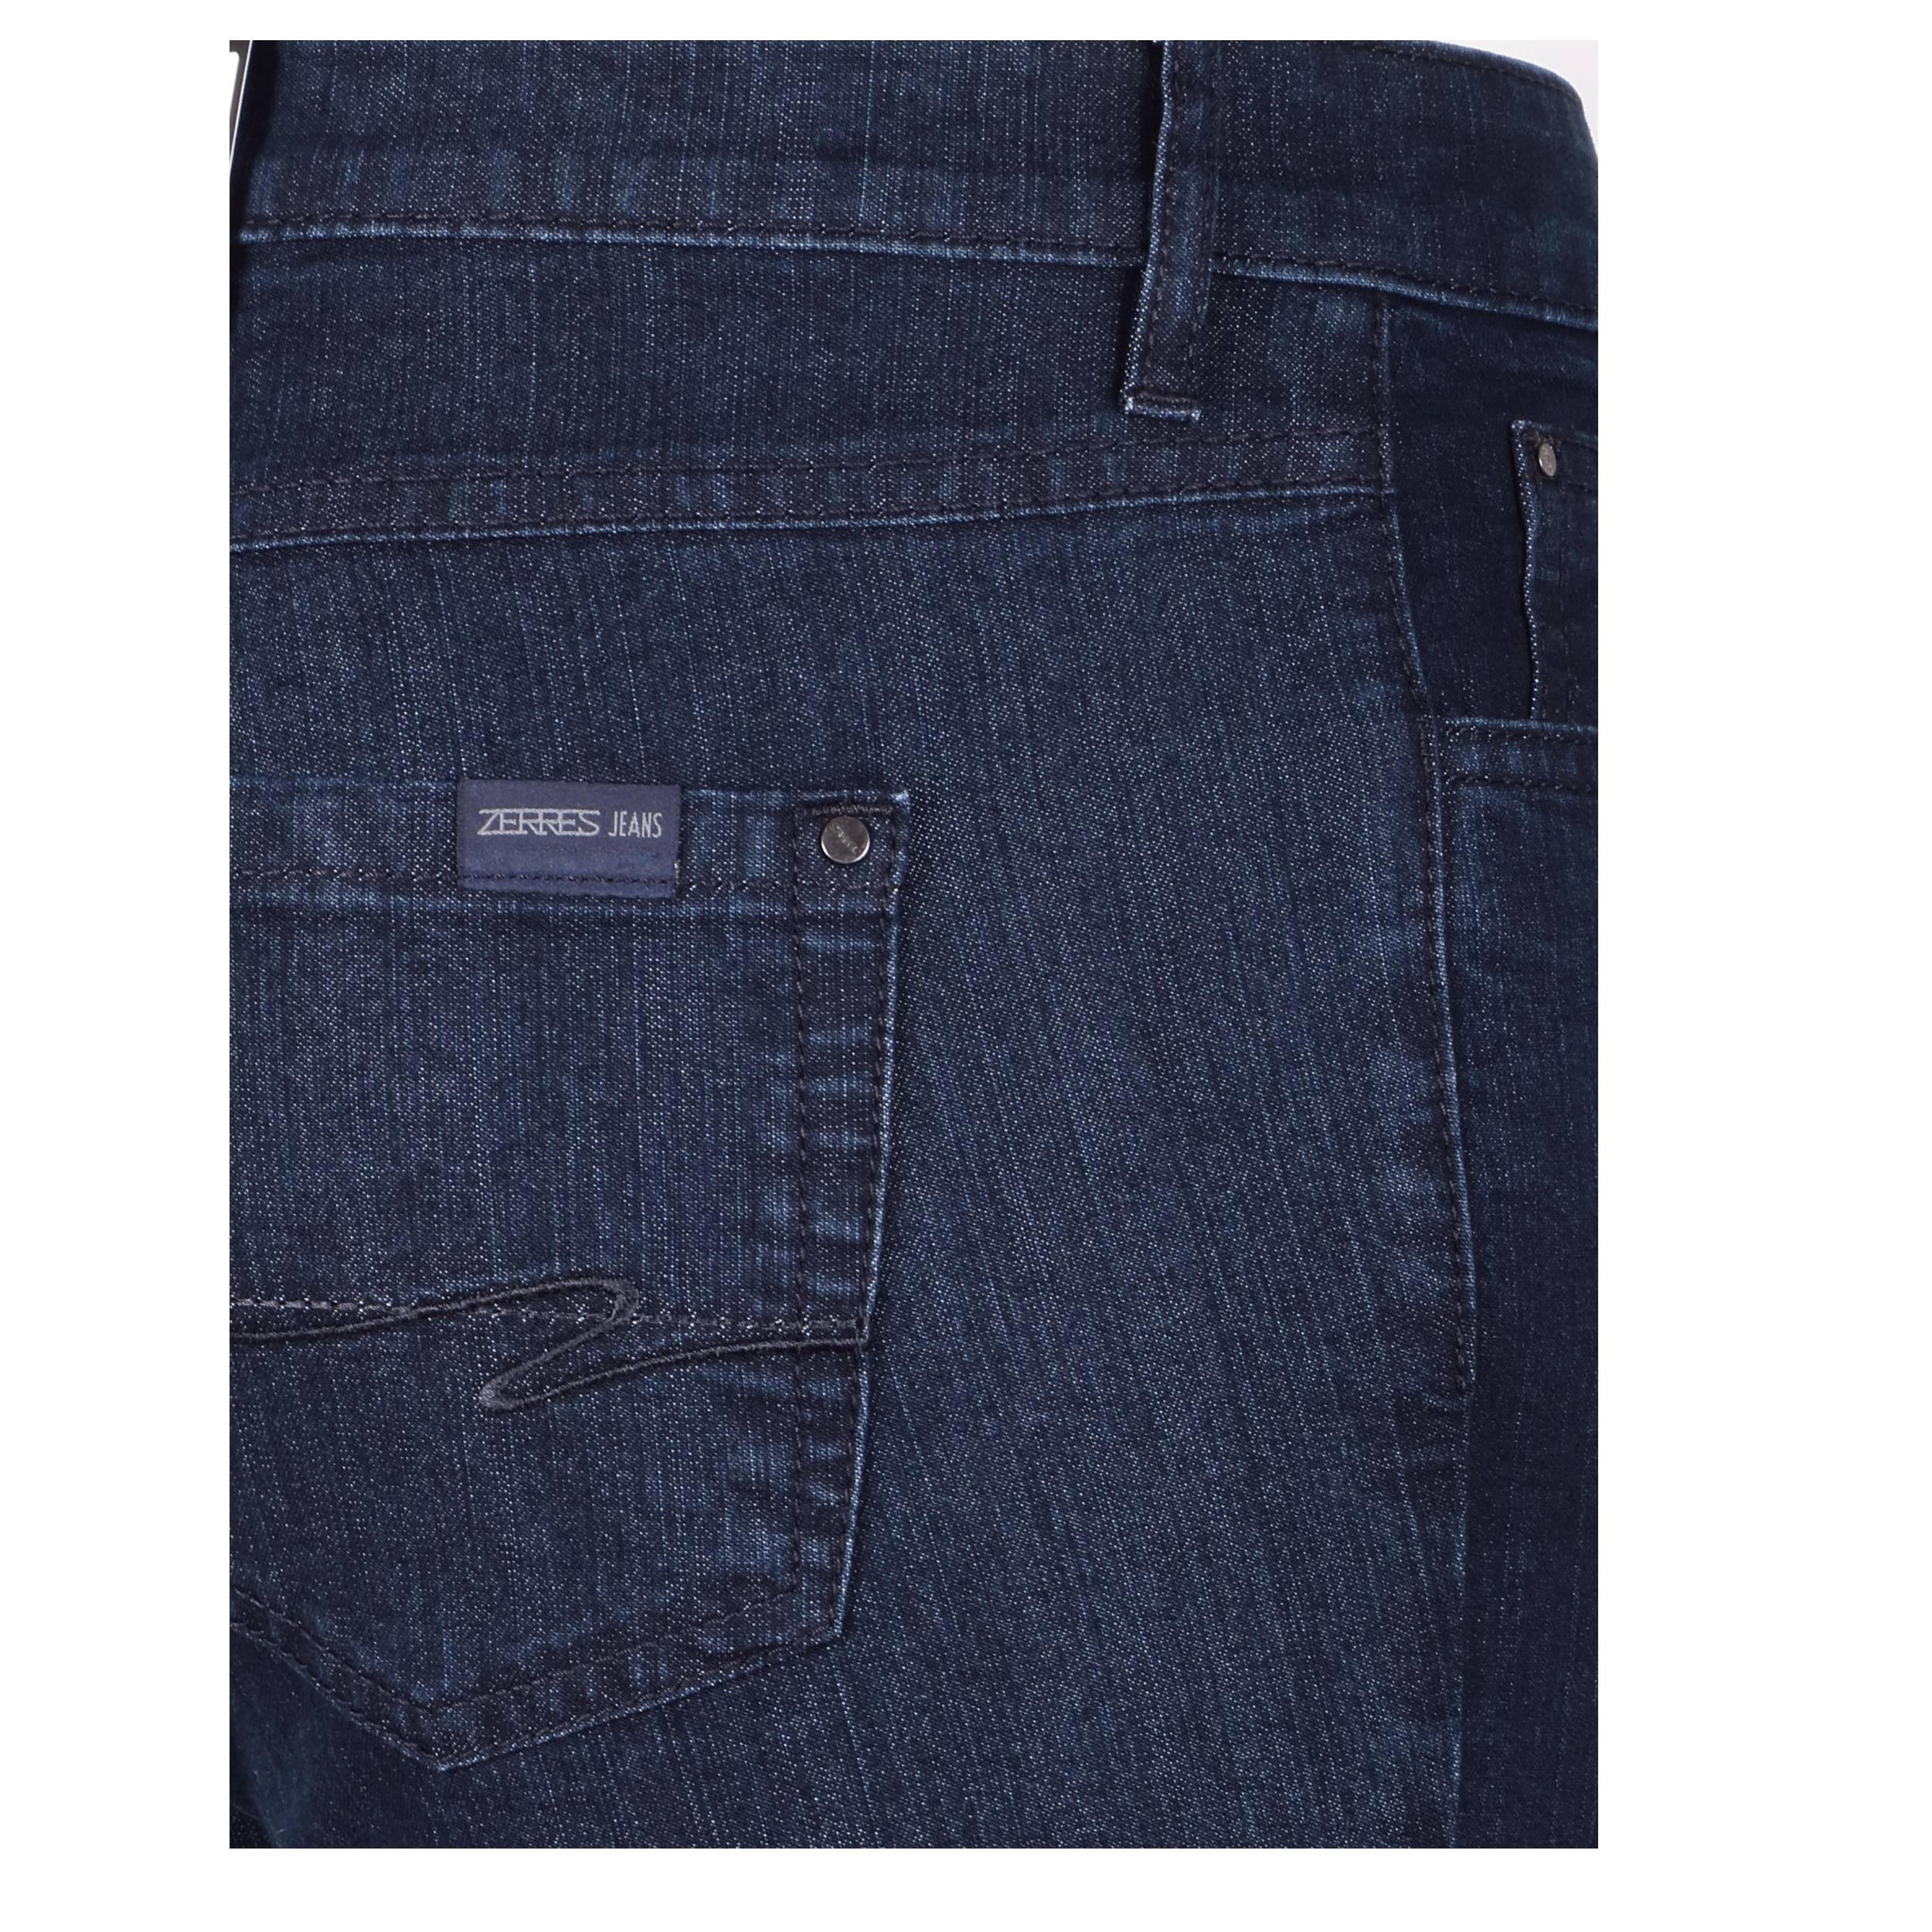 Zerres Damen Jeans Cora comfort S 19 dunkelblau